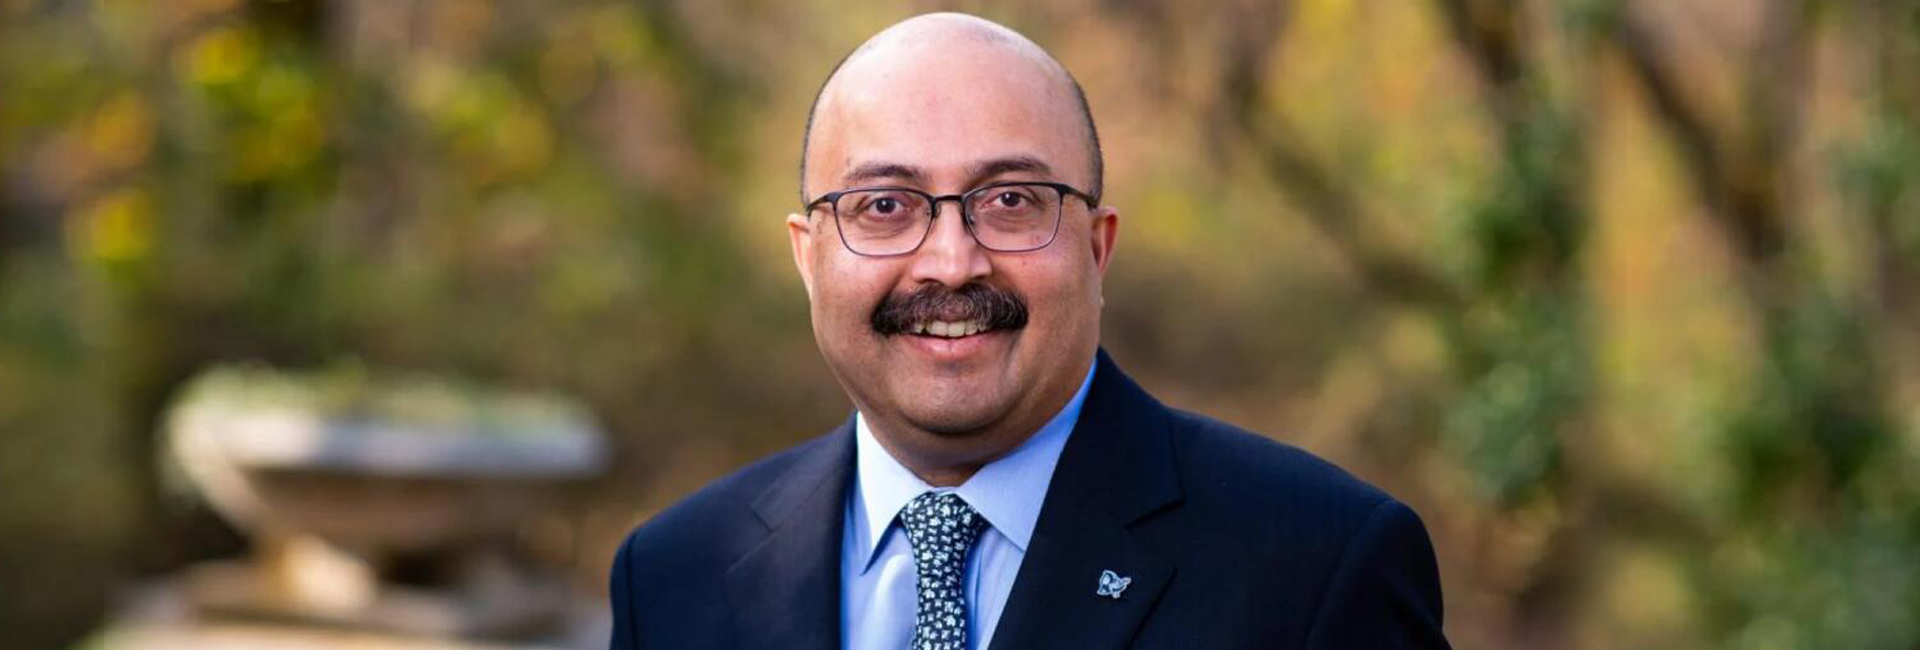 Sunil Kumar: acadêmico de origem indiana será o próximo presidente da Tufts University